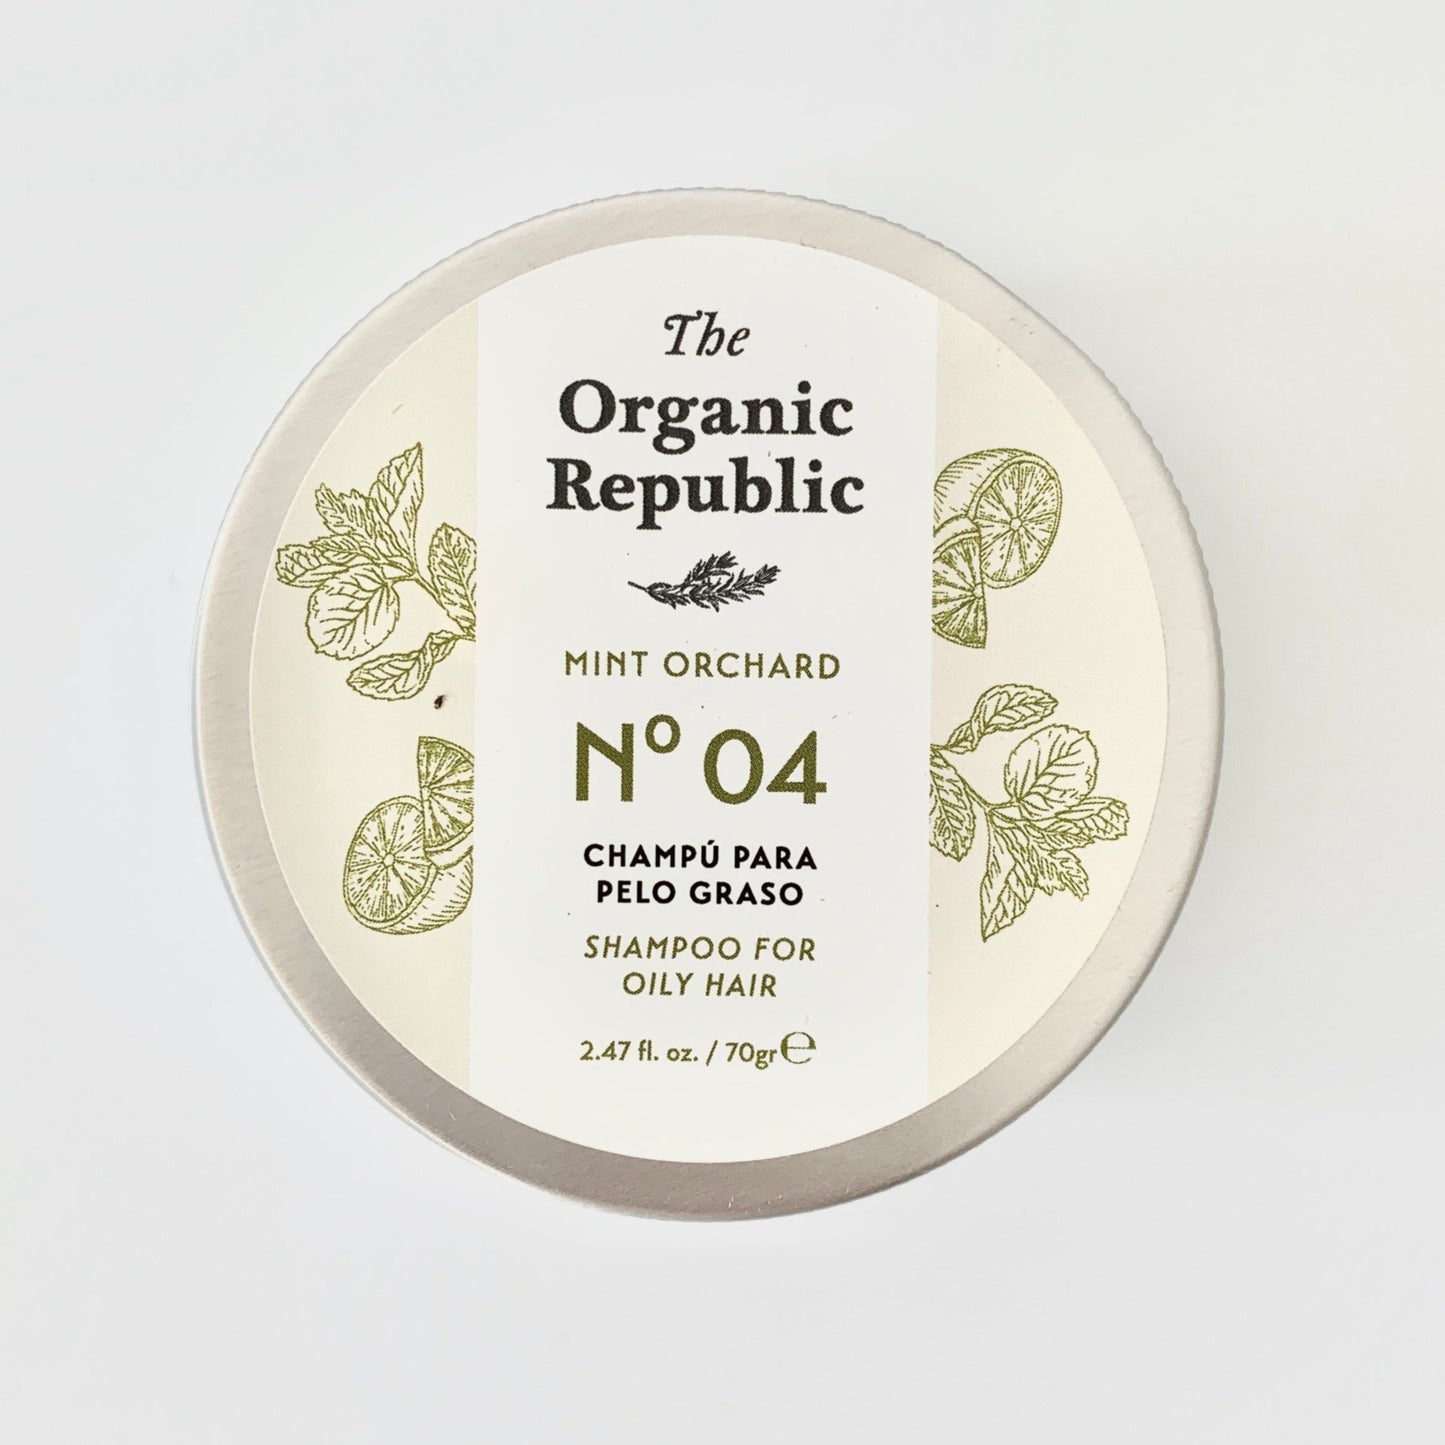 Champú sólido para pelo graso NEW - The Organic Republic